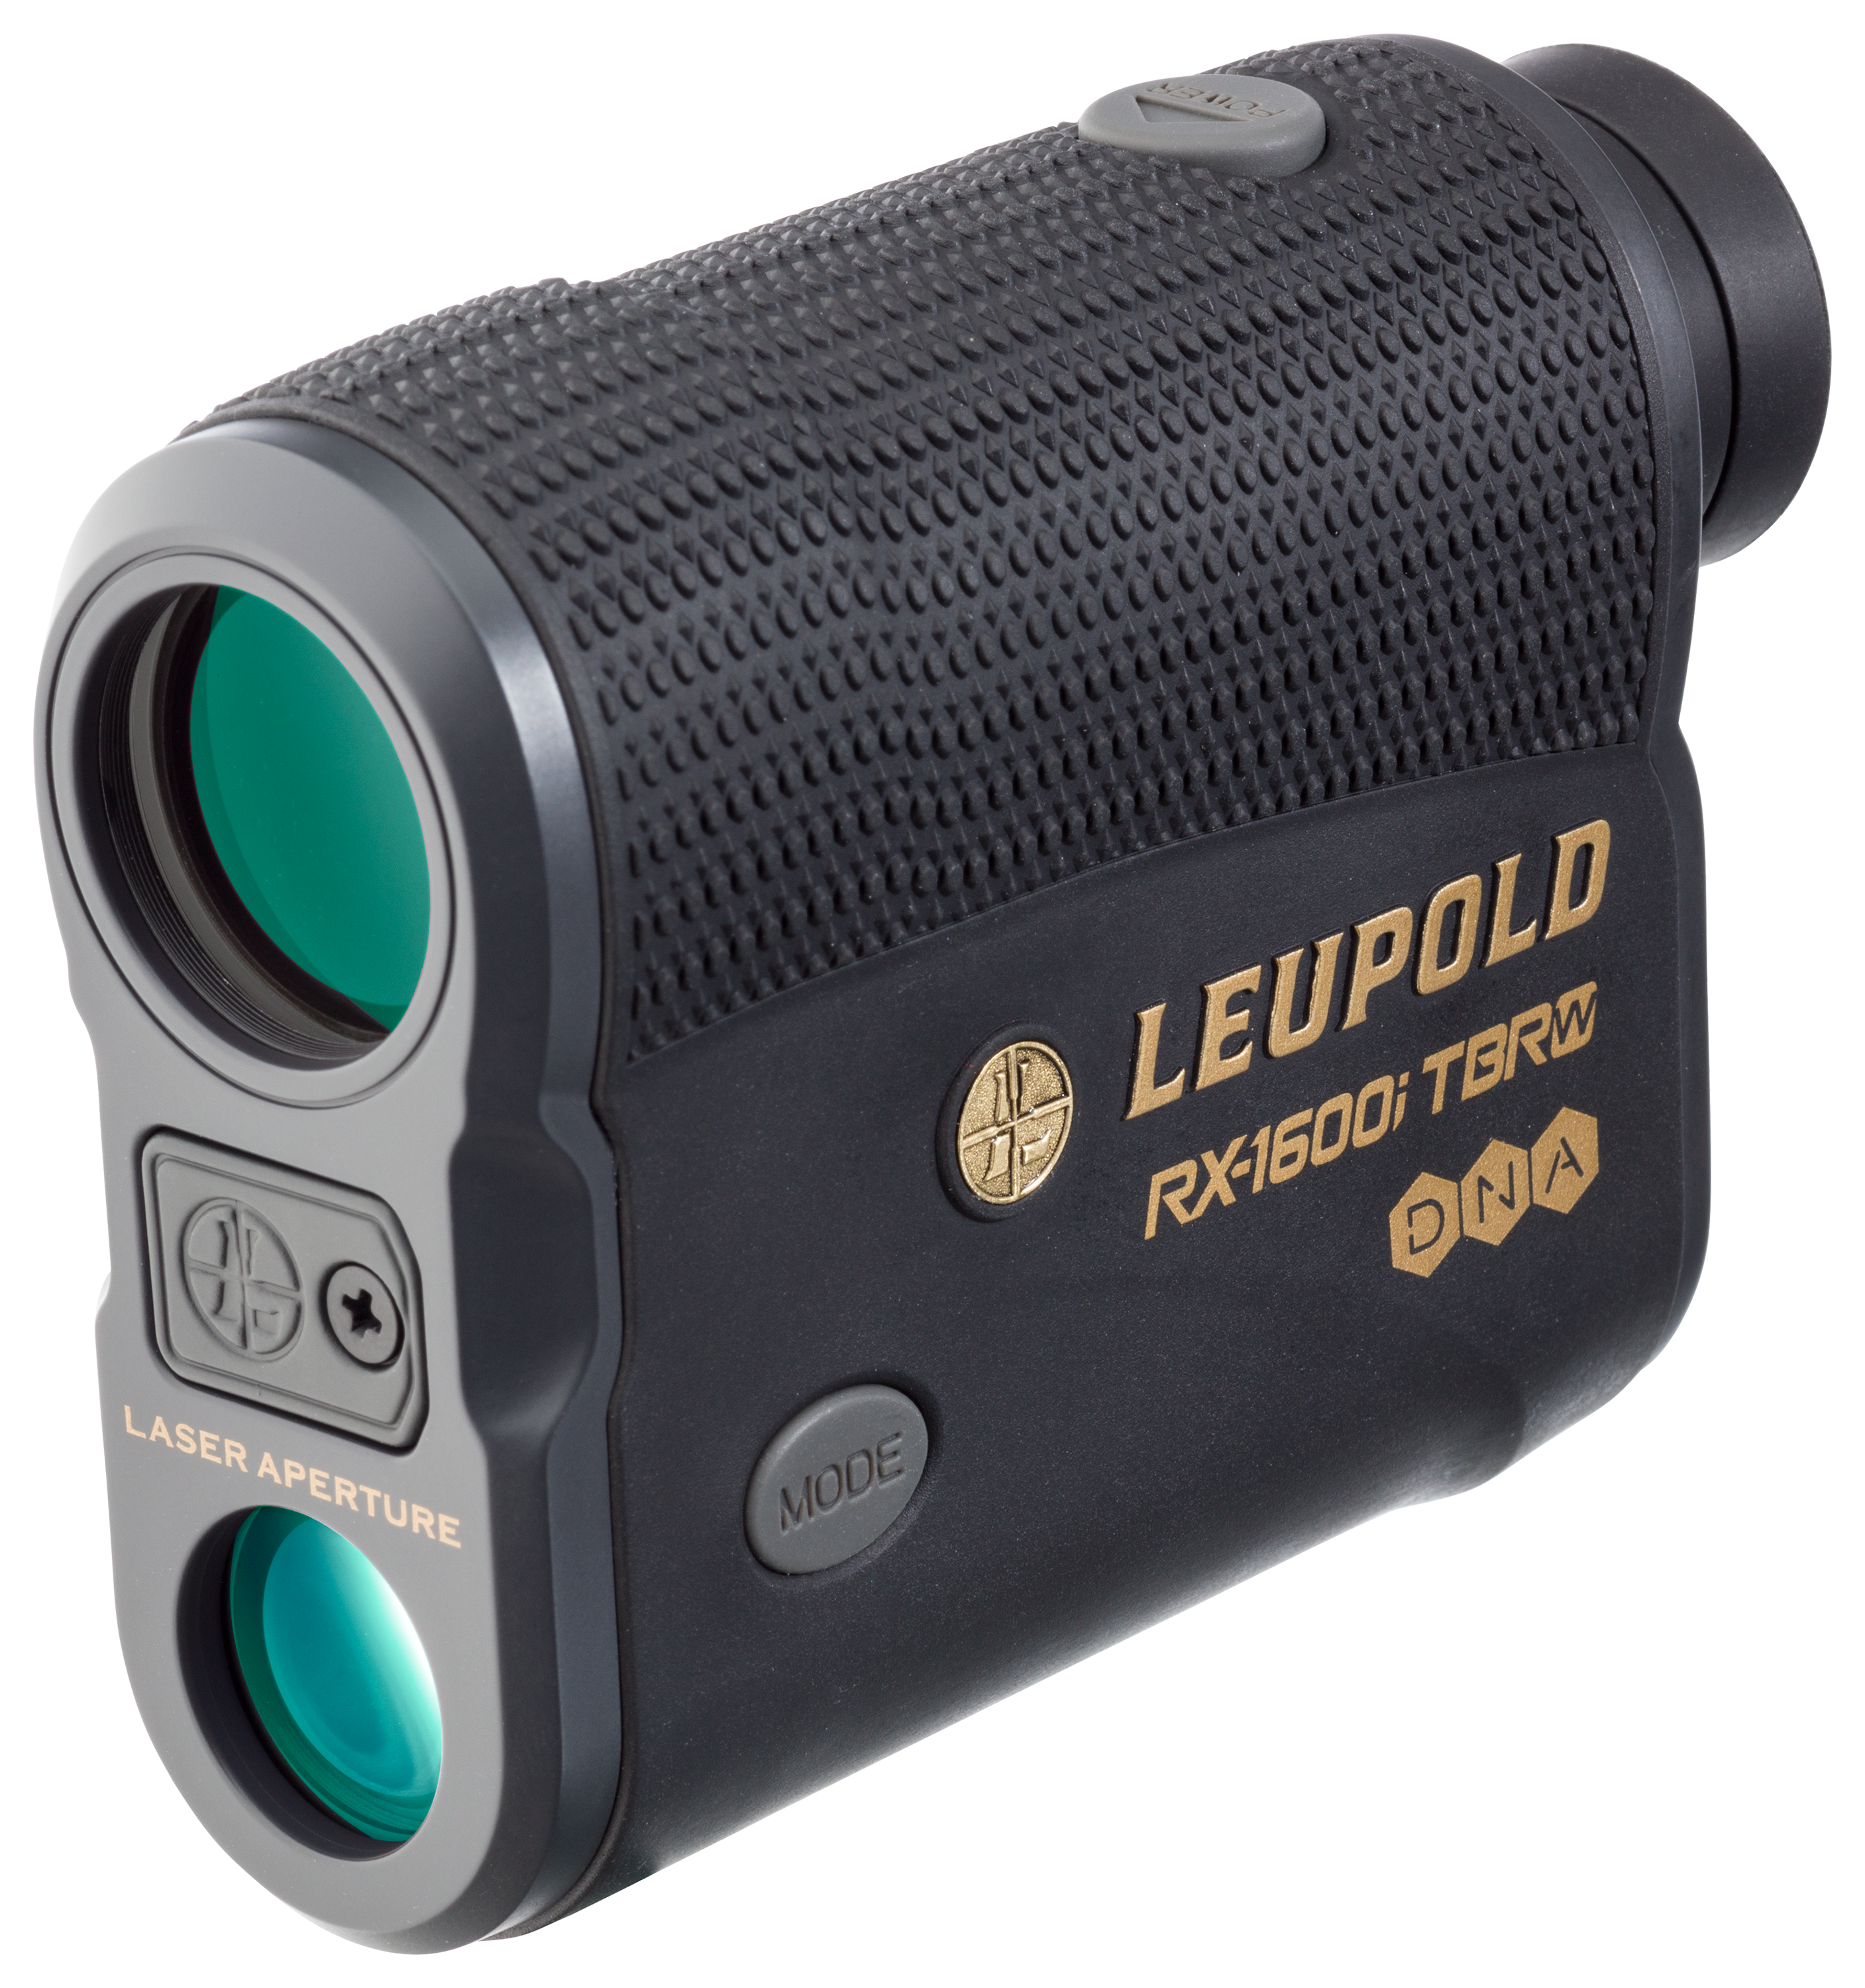 Leupold RX-1600i TBR/W Rangefinder